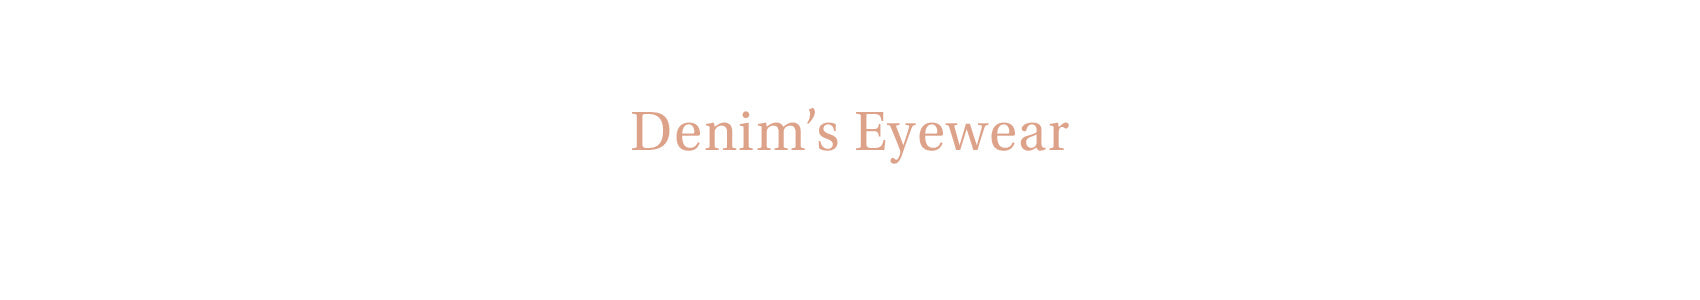 Denim Eyewear